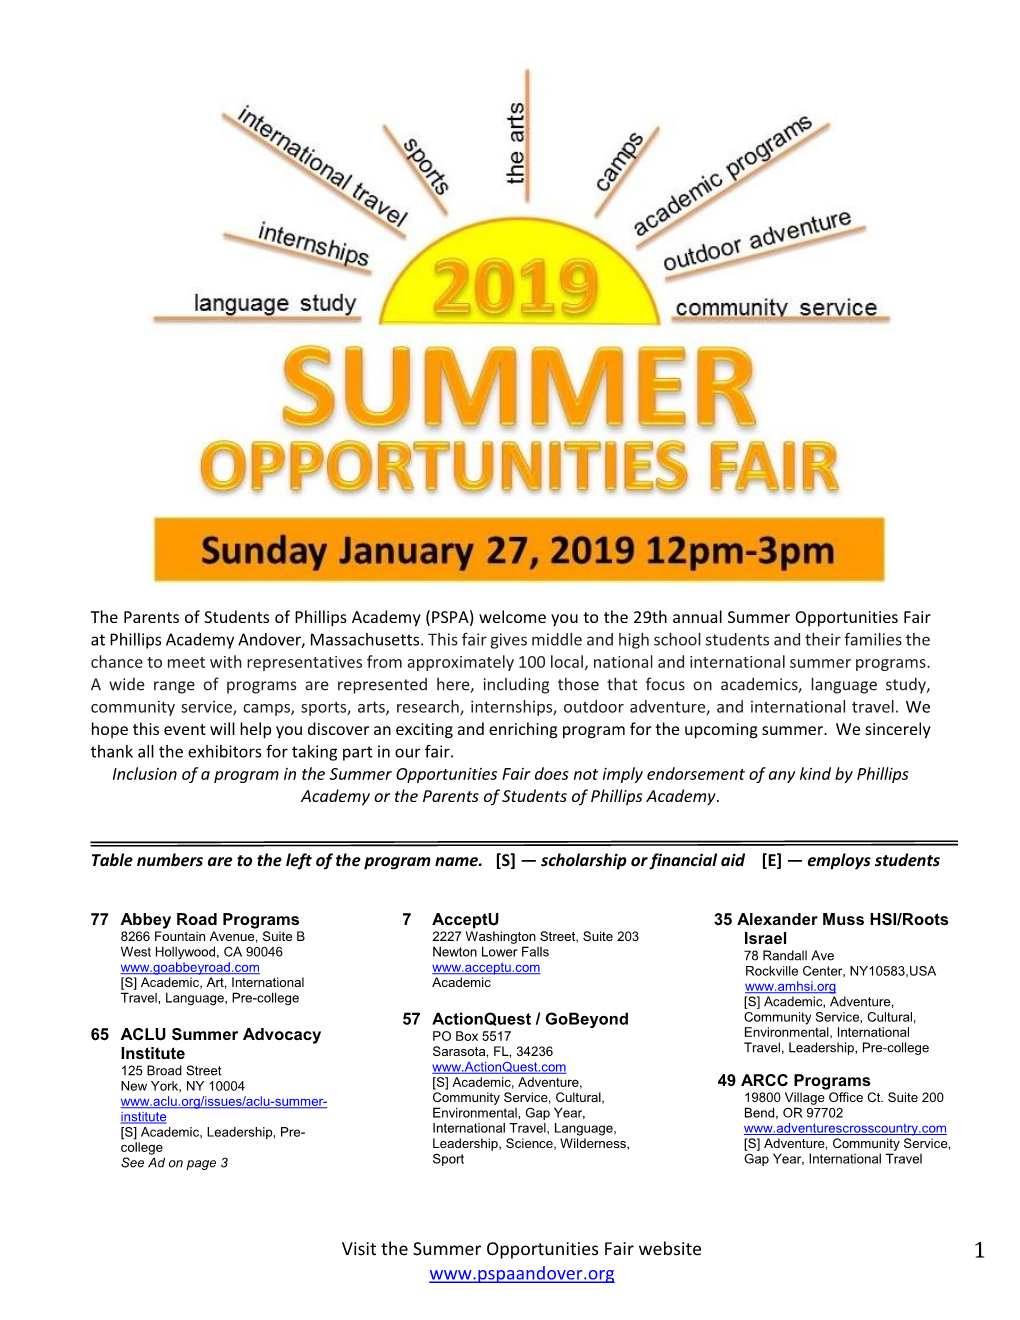 Visit the Summer Opportunities Fair Website